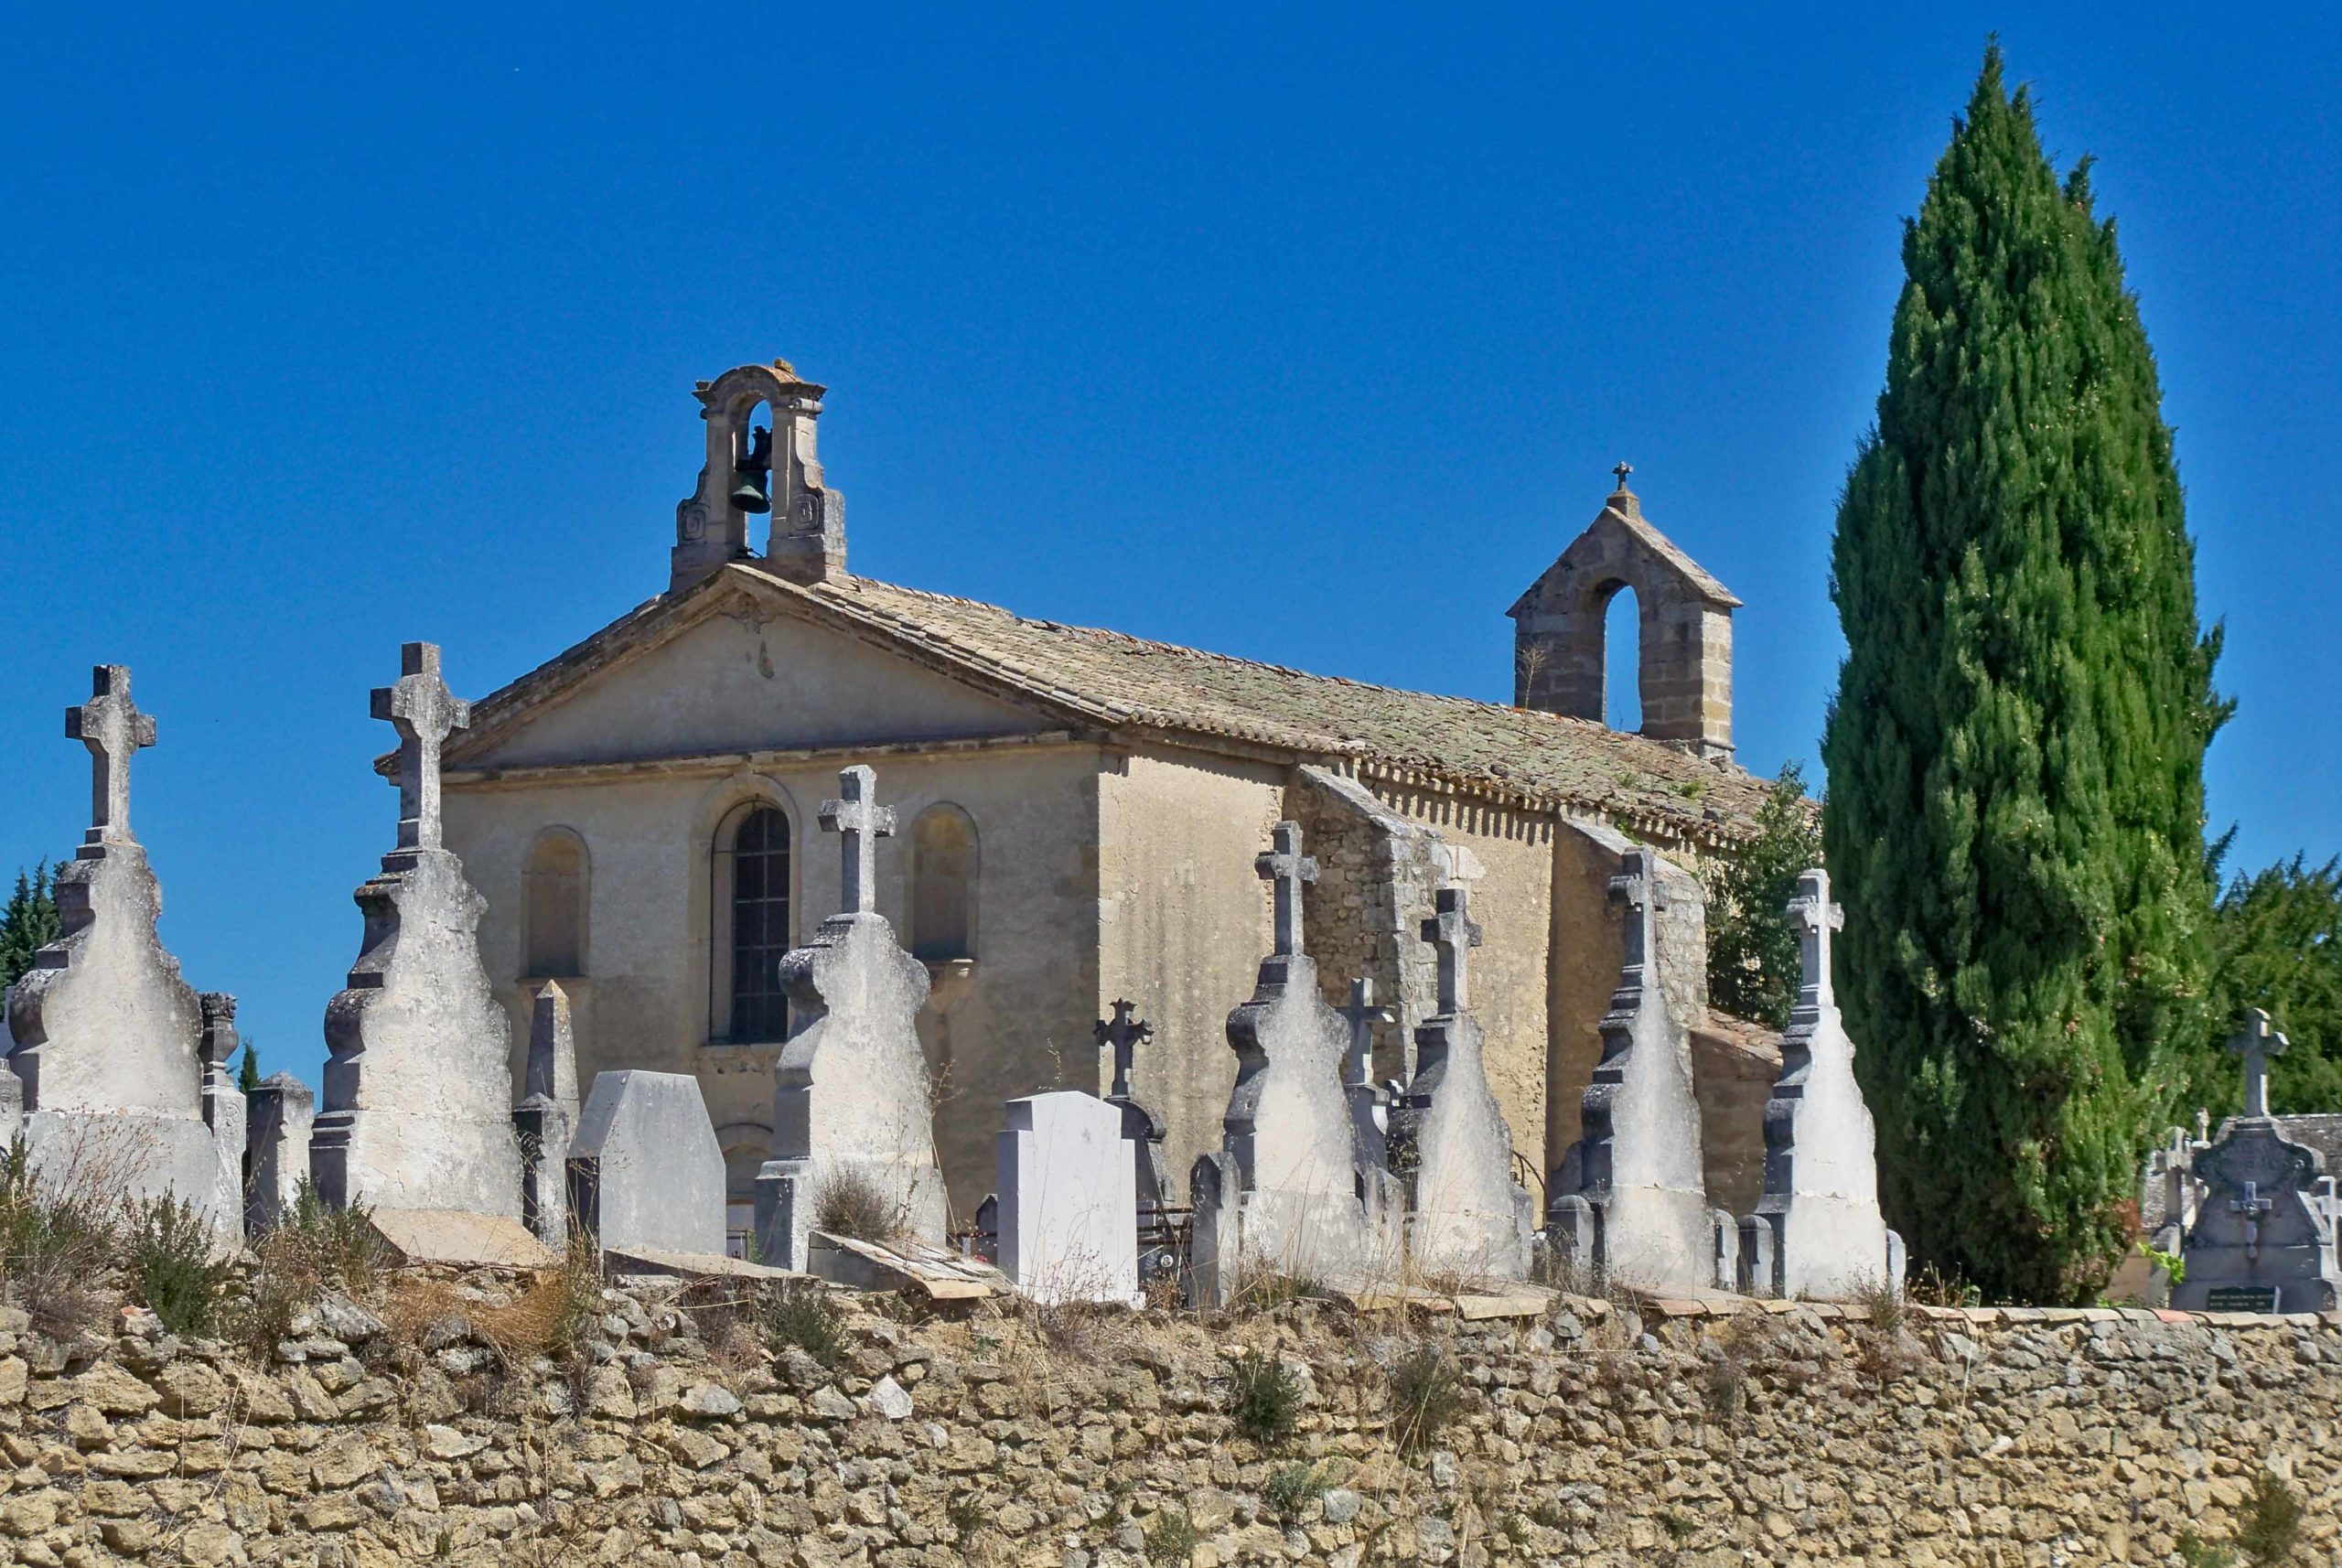 La chapelle Saint Michel du cimetière. Photo : Véronique PAGNIER (Public Domain via Wikimedia Commons)